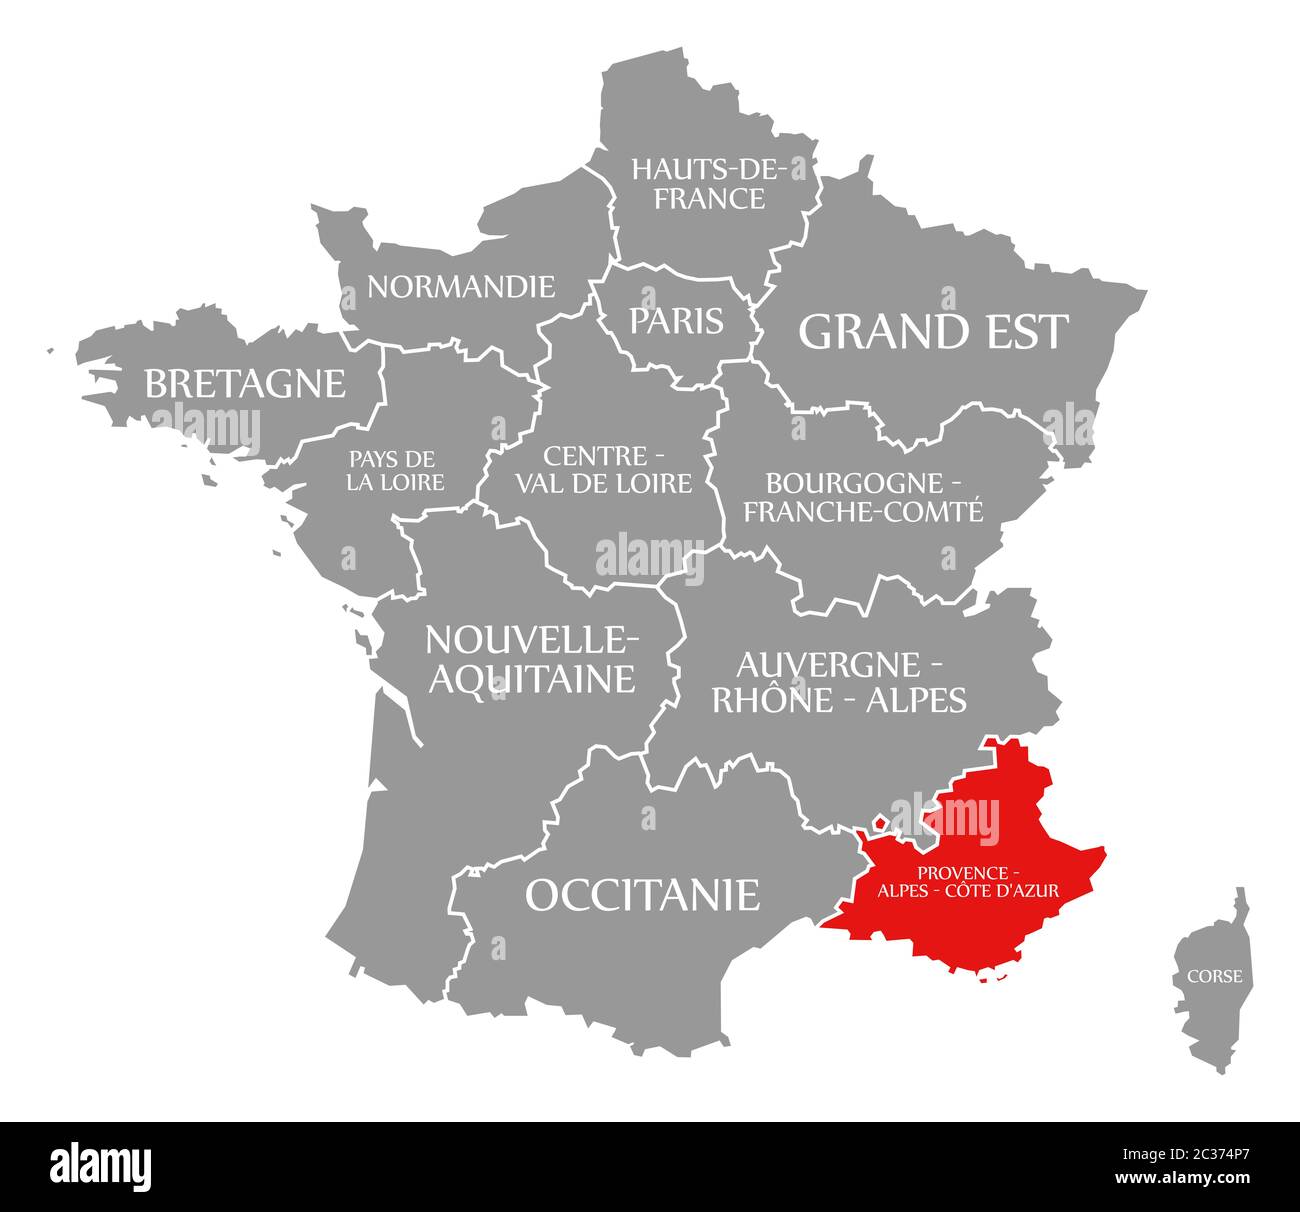 Provence - Alpes - Côte d'Azur en surbrillance rouge dans la carte de  France Photo Stock - Alamy